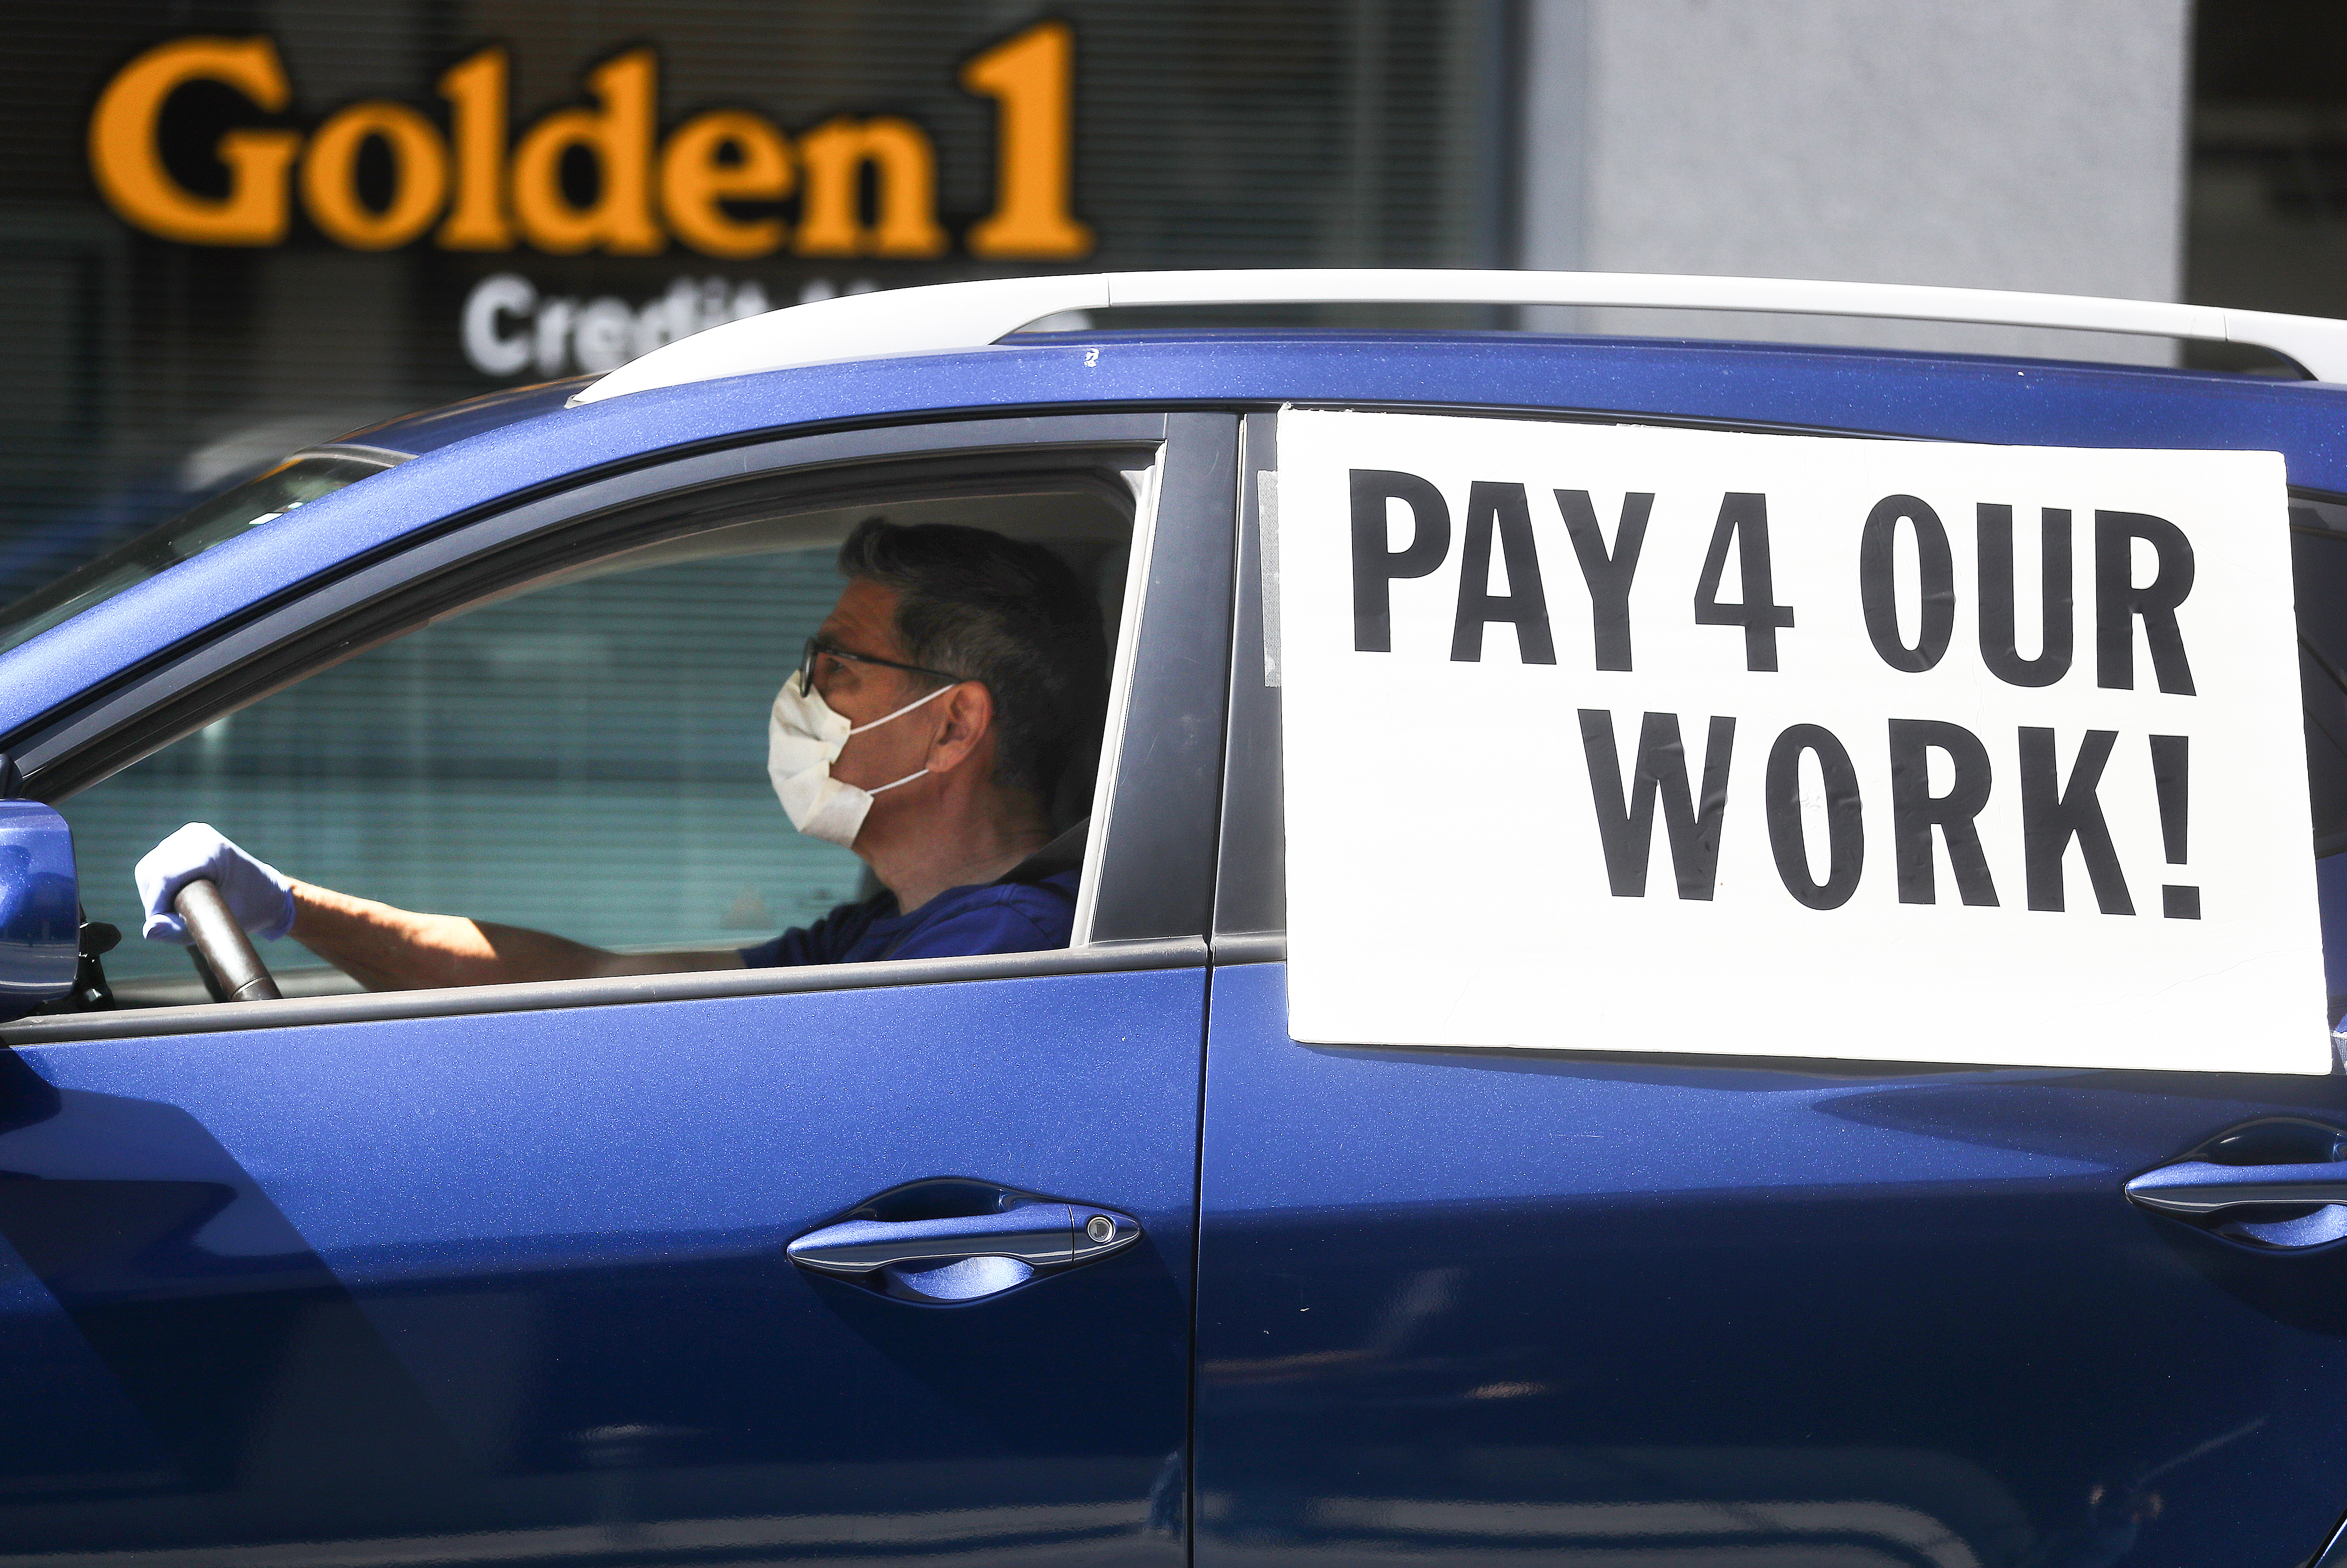 Kaliforniában együtt tüntettek a Lyft és az Uber sofőrjei, mert a törvények szerint nem jelentkezhetnek munkanélküli segélyért, ráadásul a két cég is sokuknak tartozik